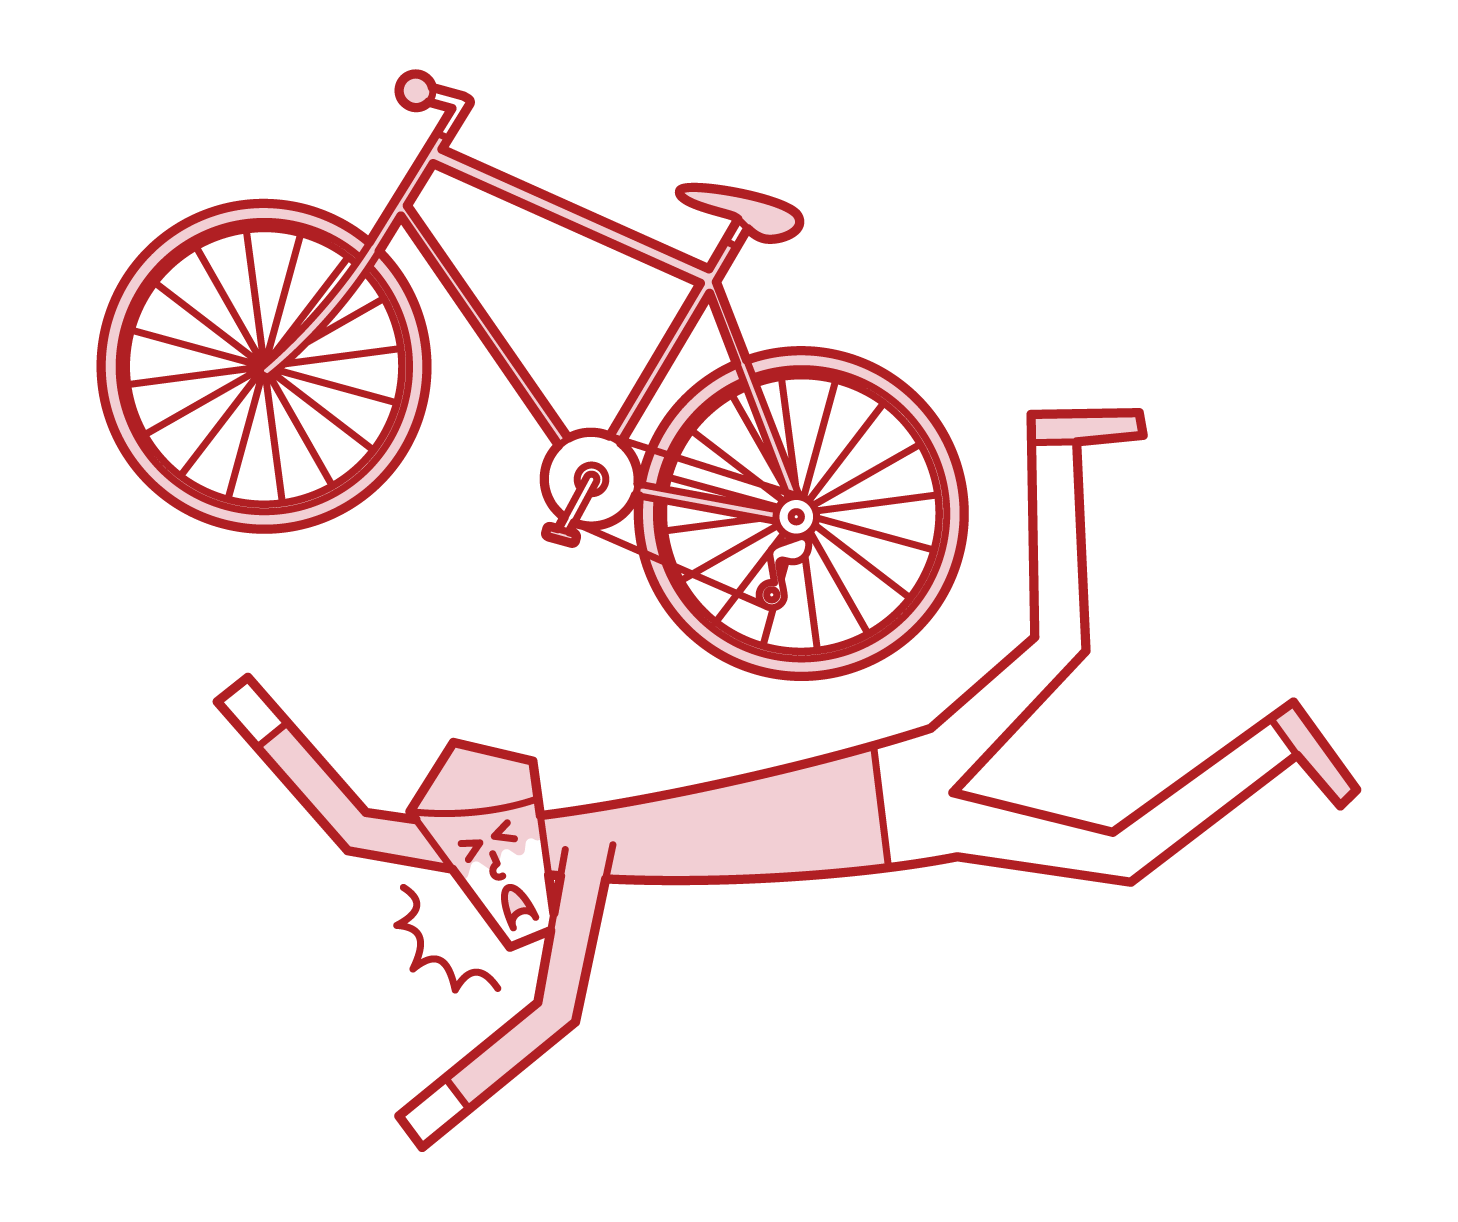 自転車で転倒する人 男性 のイラスト フリーイラスト素材 Kukukeke ククケケ